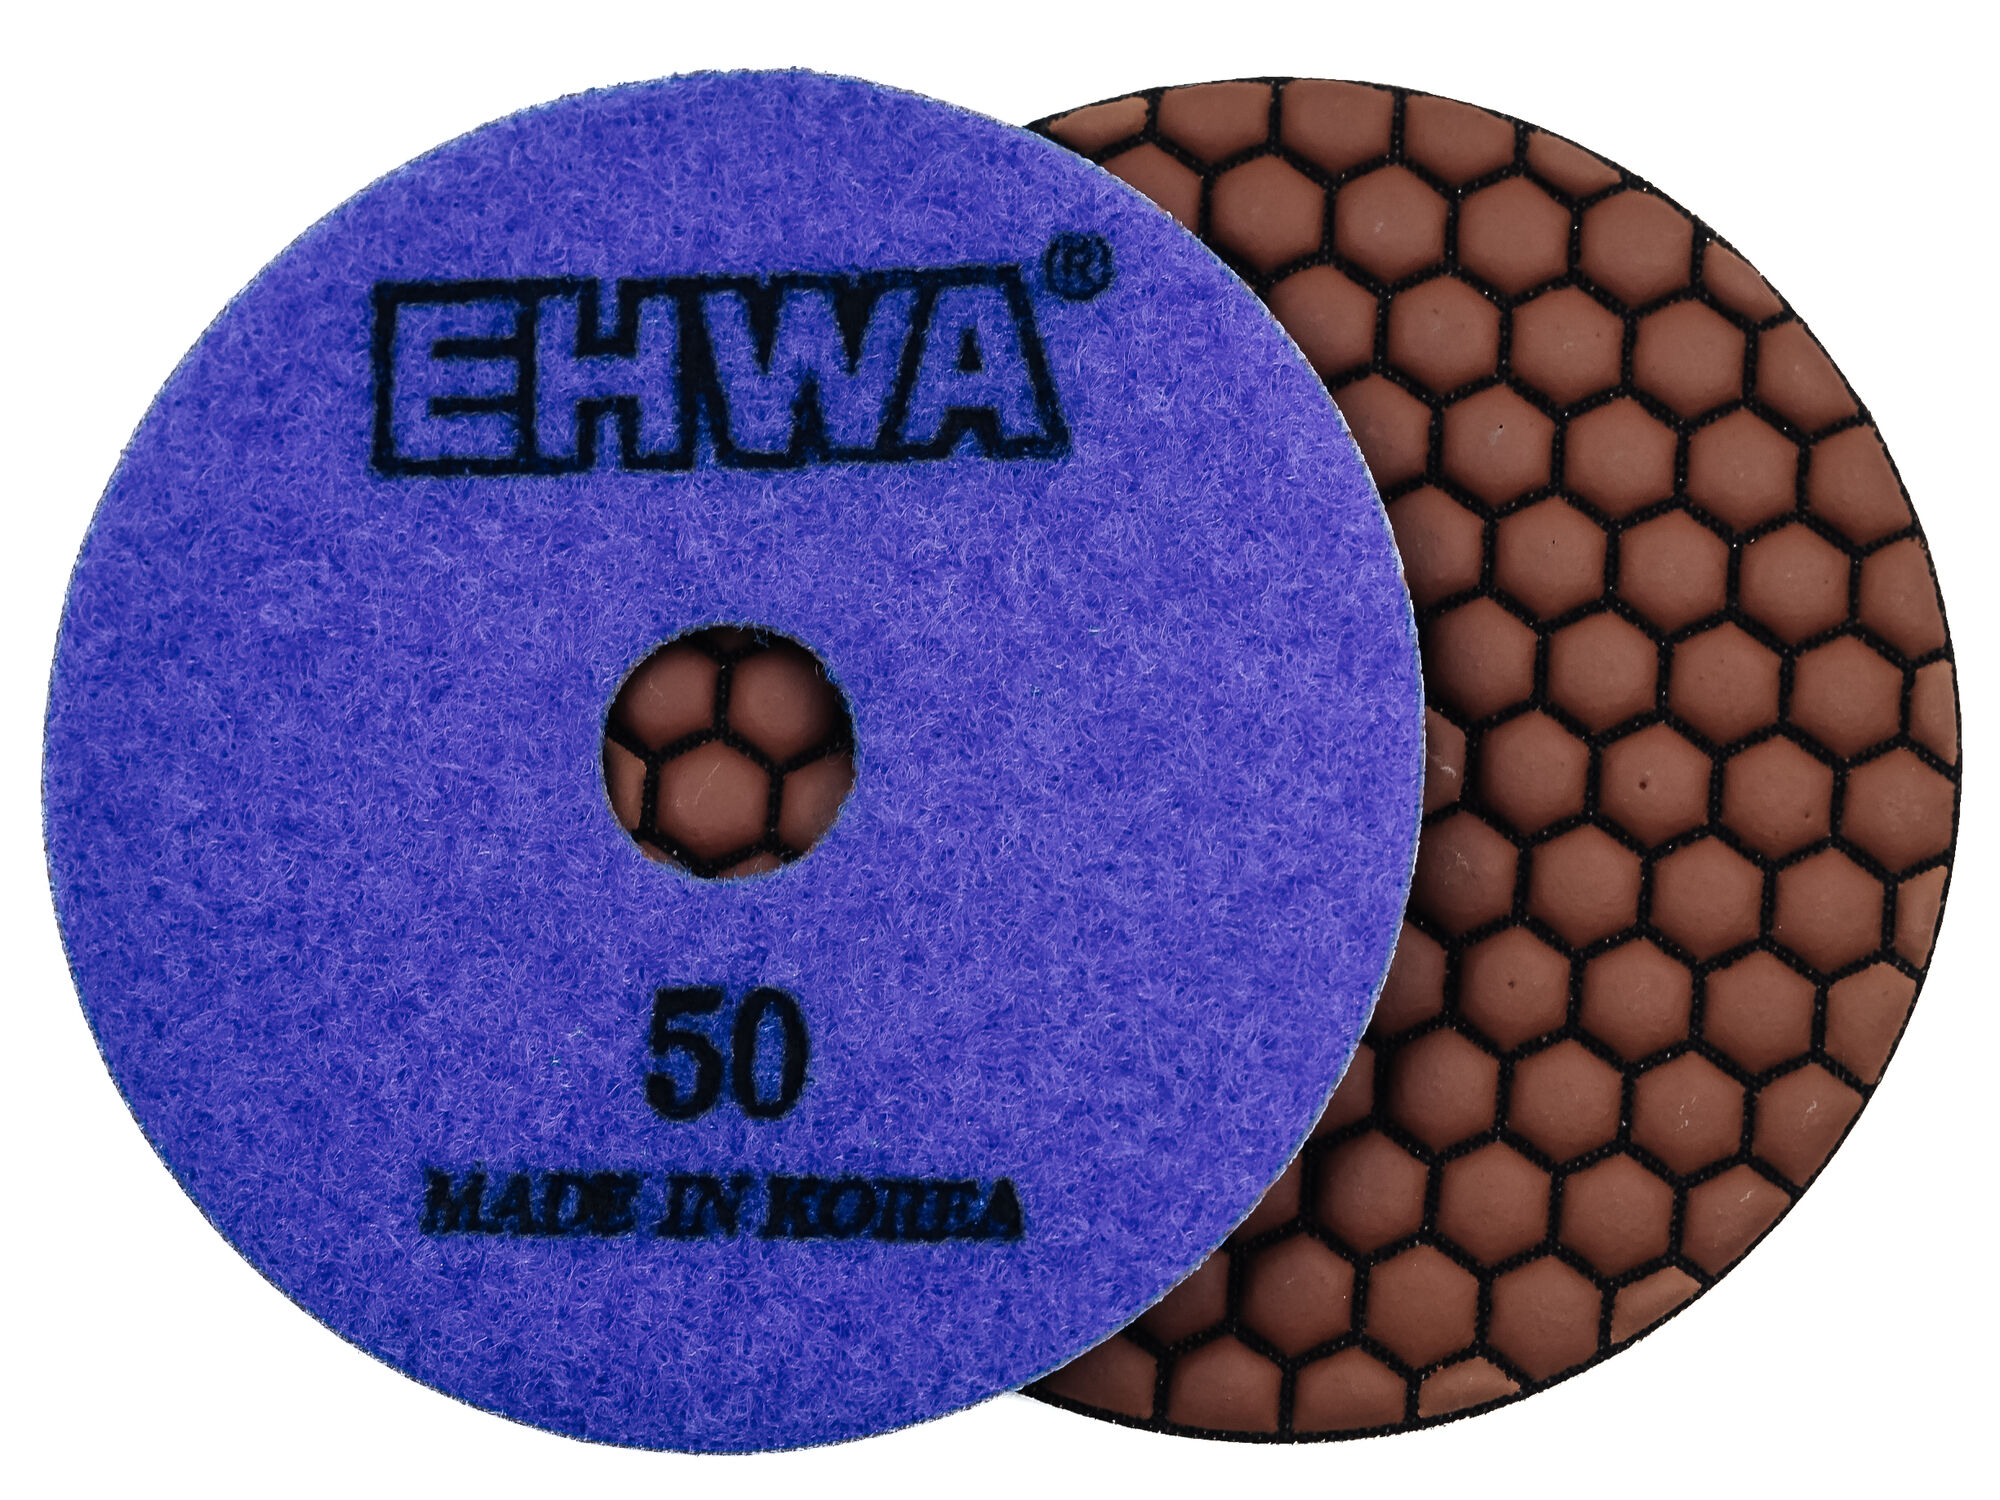 Алмазные гибкие полировальные диски № 50 d 100 мм по камню EHWA (Ихва) сухие